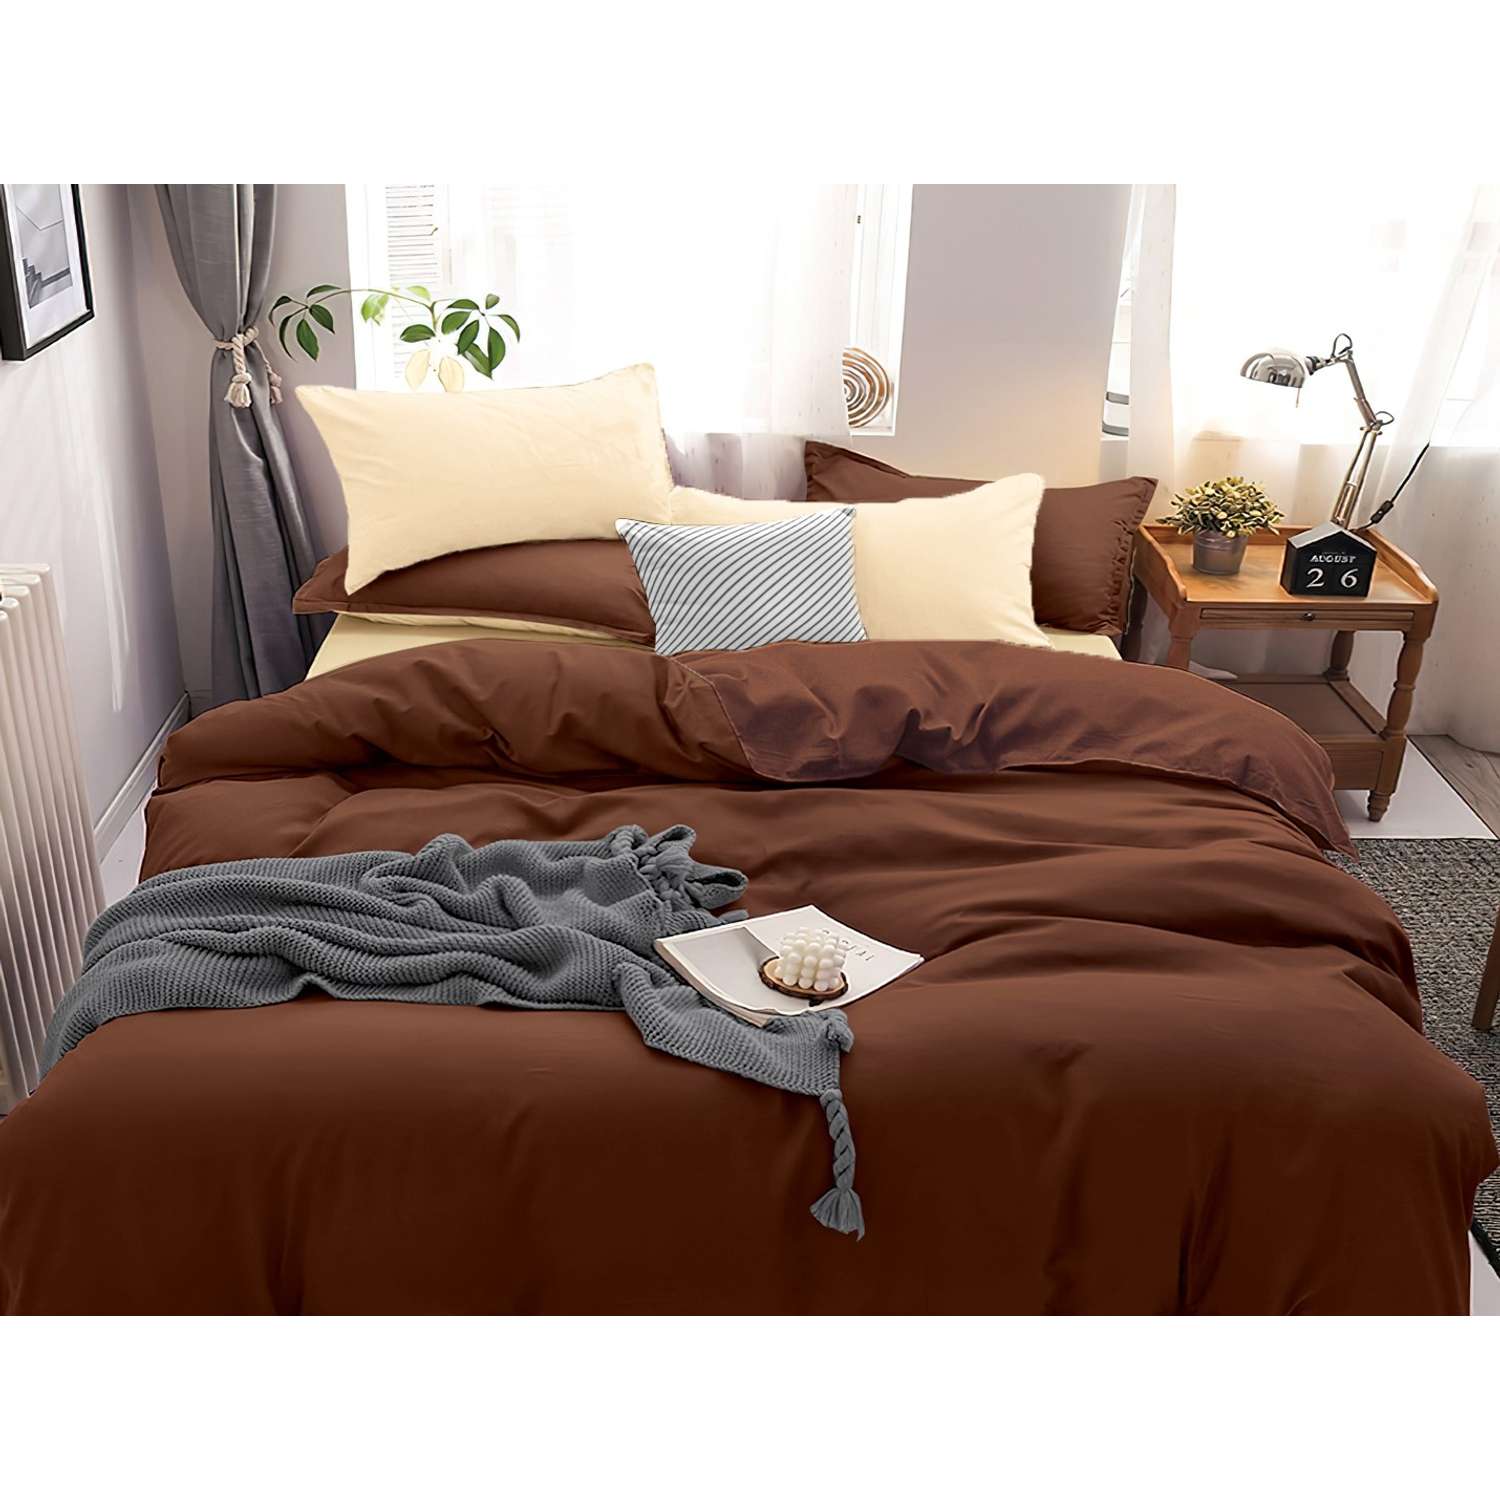 Комплект постельного белья PAVLine Манетти полисатин Евро шоколад/бежевый S52 - фото 1